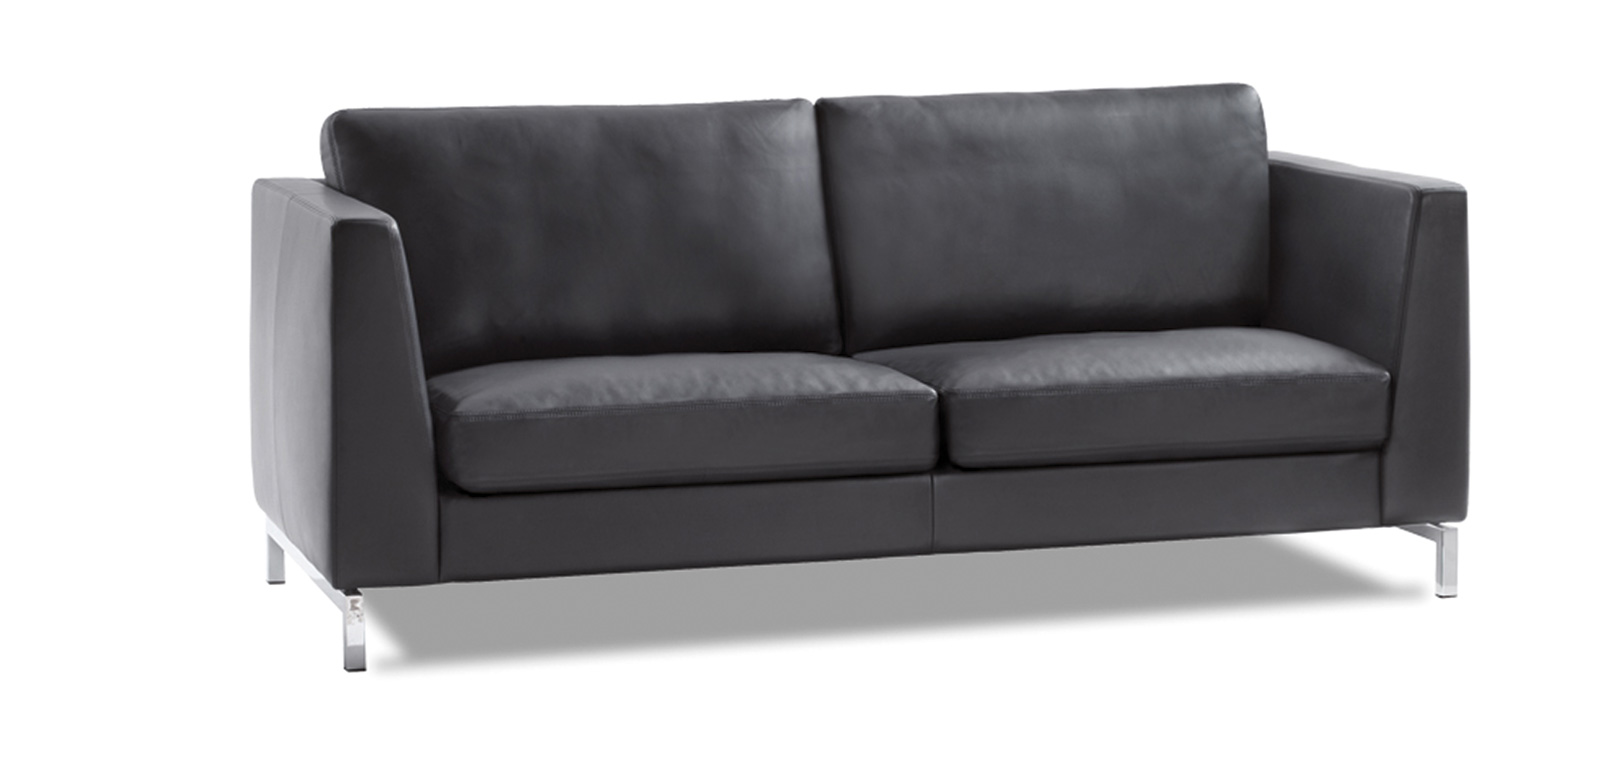 CL850 Sofa in zwart leer met chromen poten